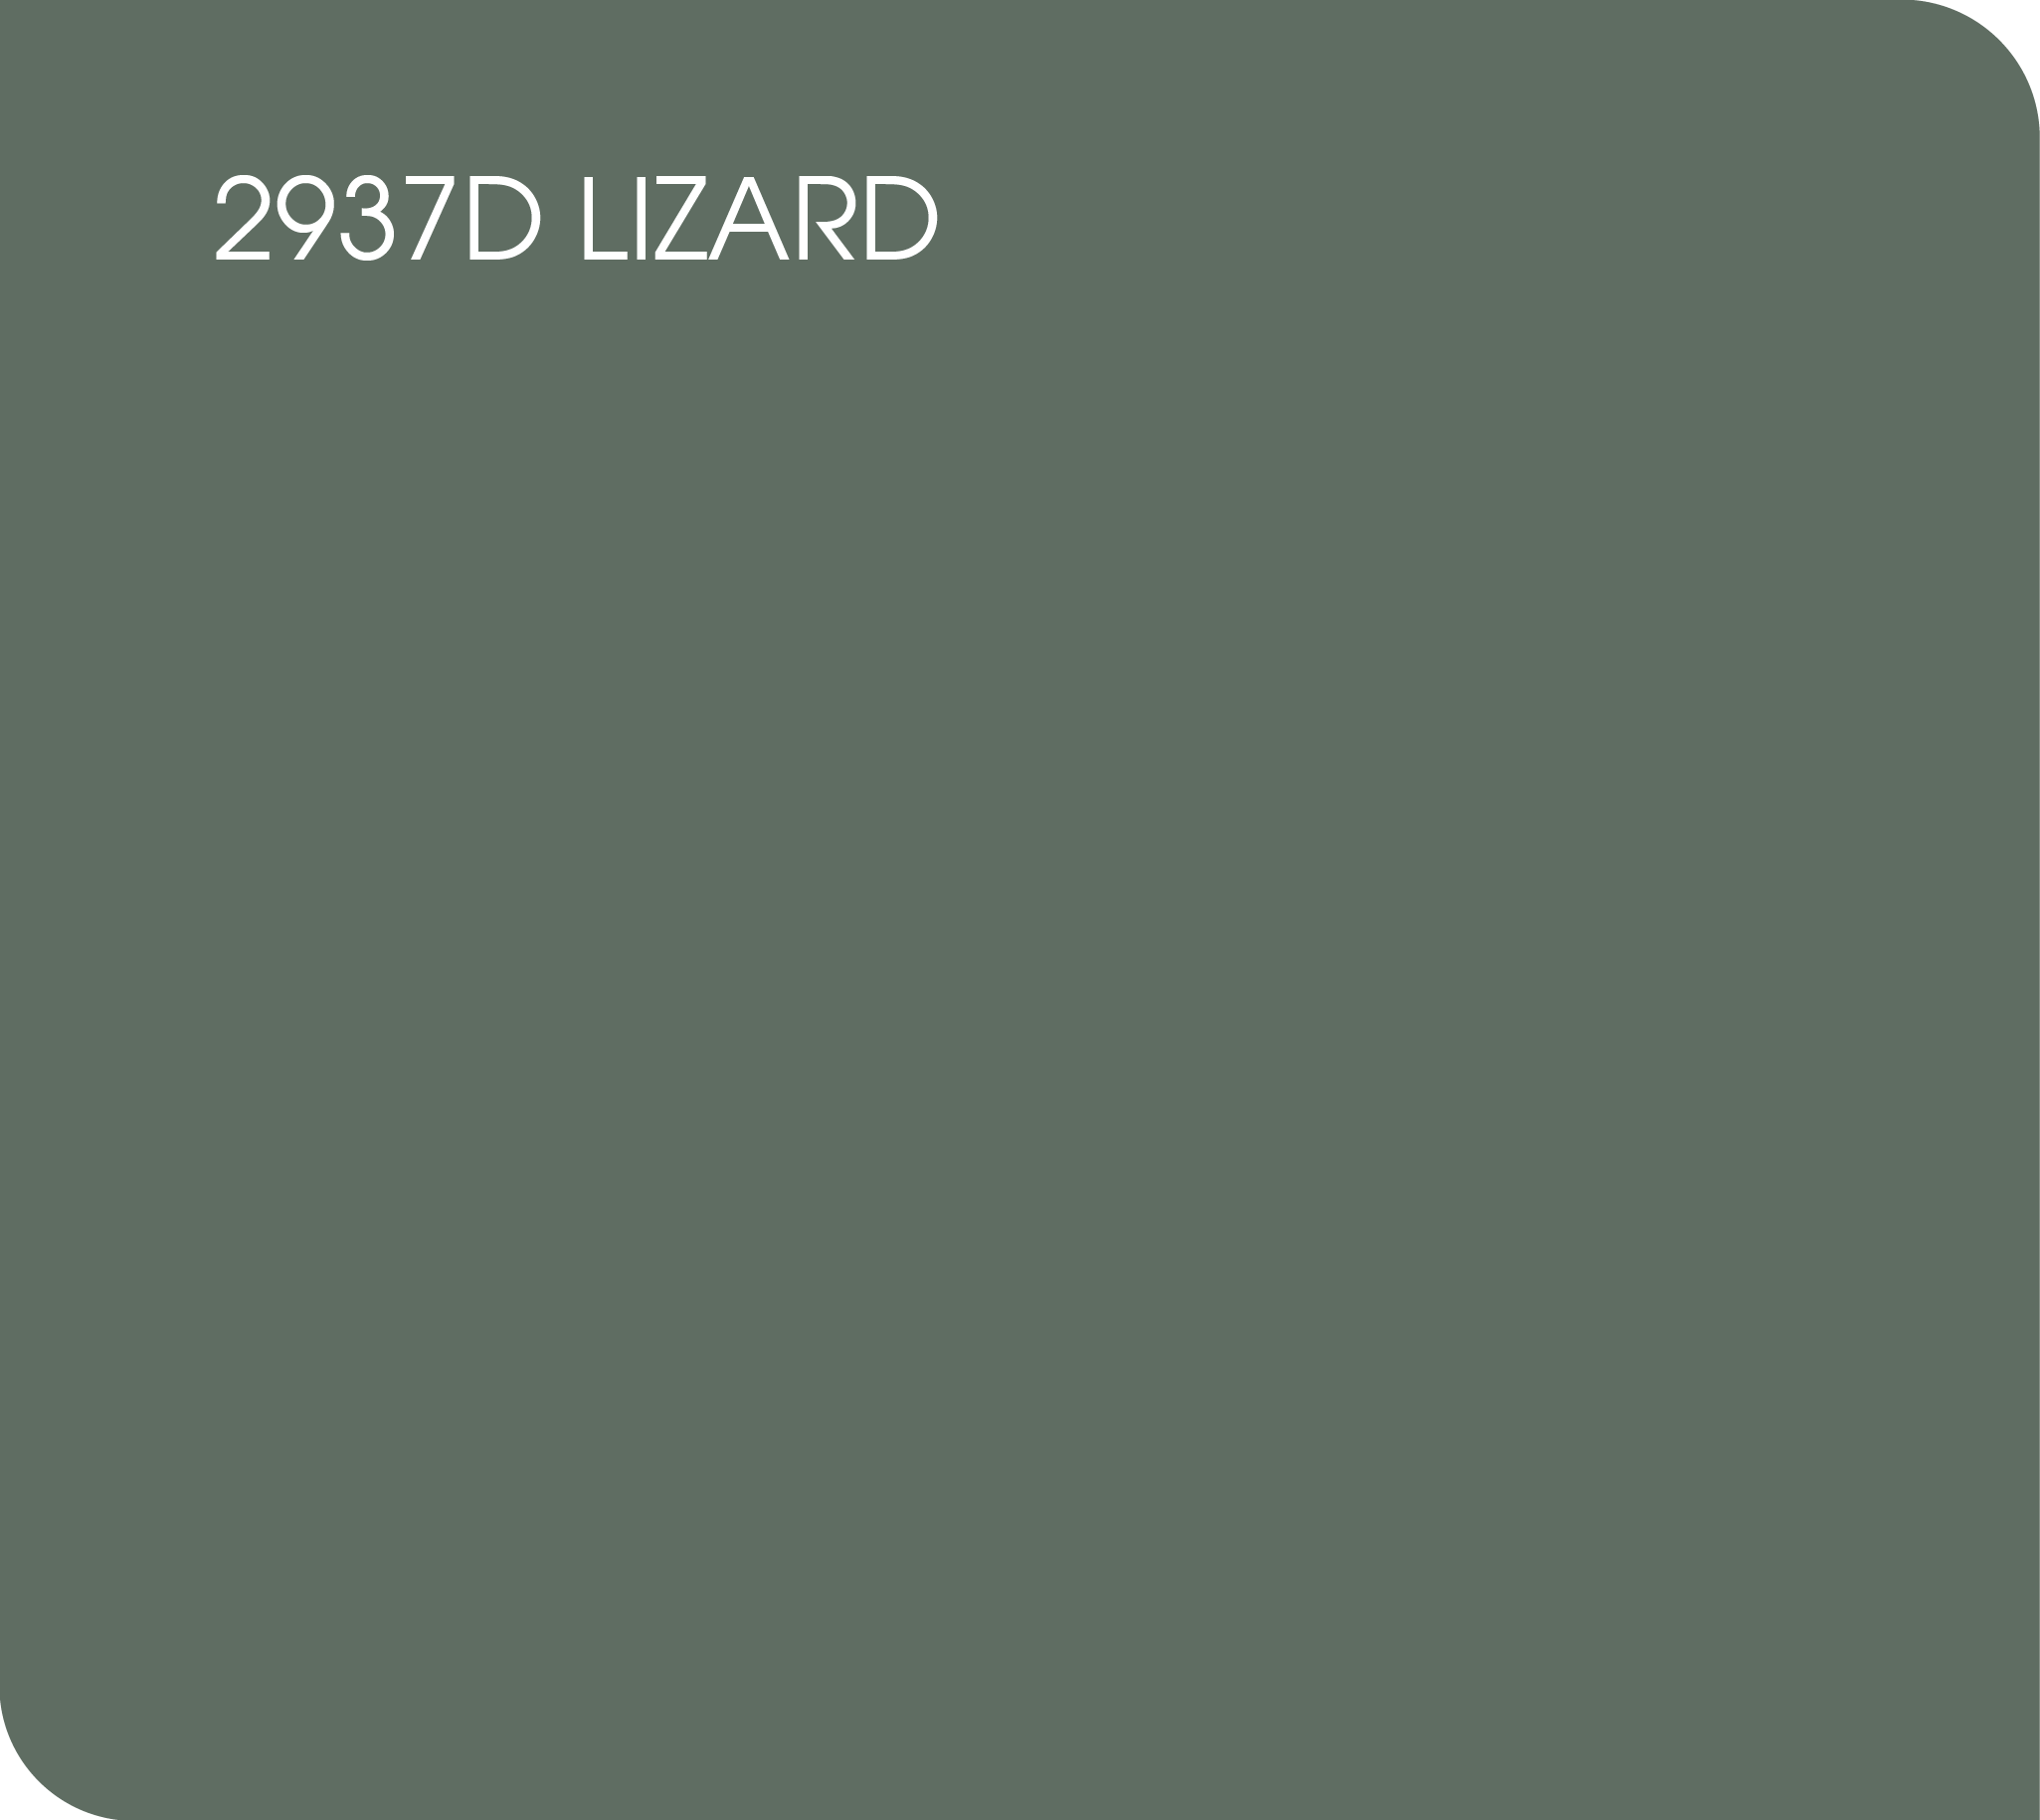 2937D lizard